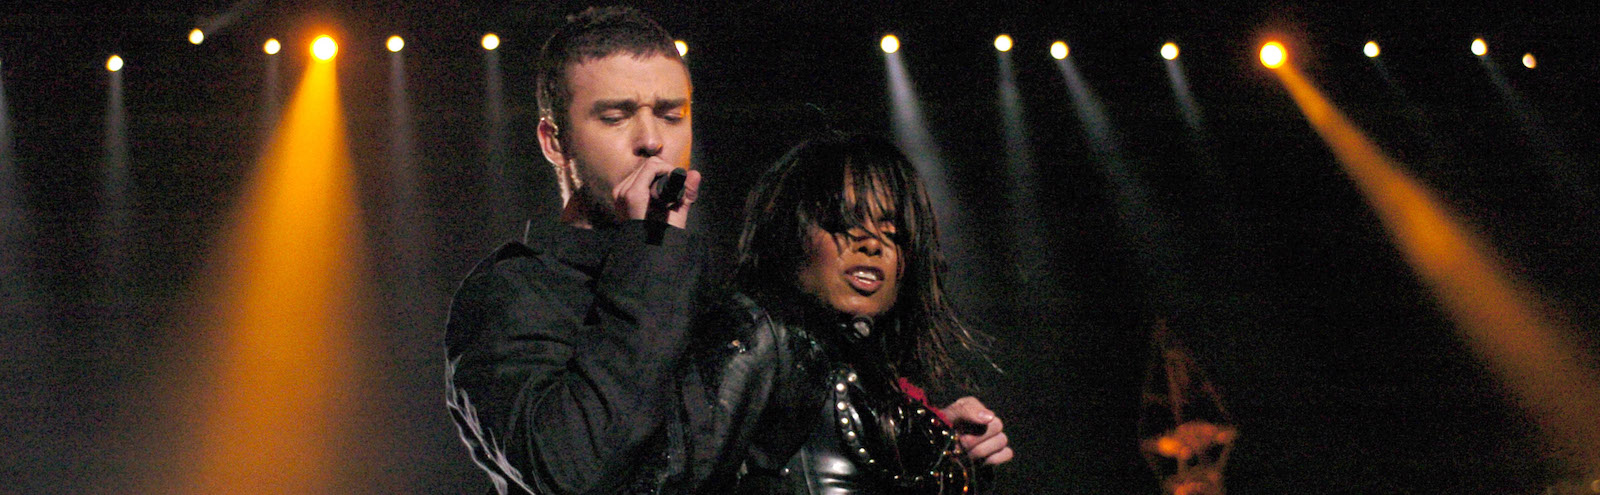 Justin Timberlake Janet Jackson 2004 Super Bowl